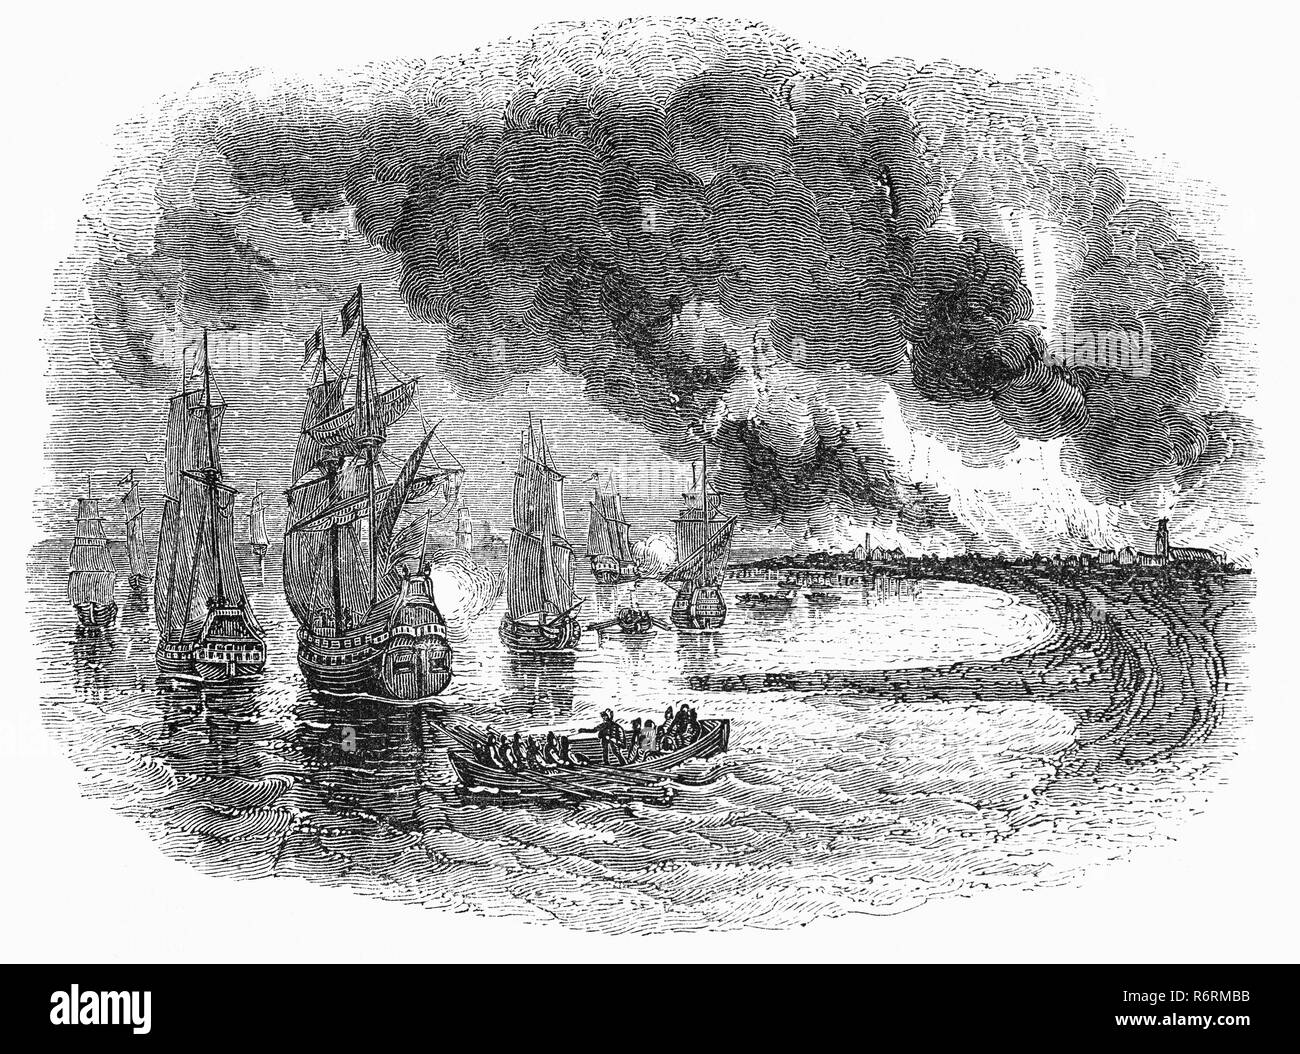 La incursión en el Medway, durante la Segunda Guerra Anglo-holandesa en junio de 1667, fue un exitoso ataque llevado por la marina holandesa en inglés battleships cuando la mayoría estaba prácticamente desarmada y no tripulados, amarrados en los anclajes de la flota fuera de Chatham Dockyard y Gillingham, en el condado de Kent. Los Holandeses tomaron la ciudad de Sheerness, navegaron en el río Medway en Chatham, Gillingham, donde intervienen la fortificación con fuego de cañones, quemado o capturaron tres buques de capital y otros diez barcos de la línea, y capturó y remolca el buque insignia de la flota inglesa, el HMS Royal Charles. Foto de stock